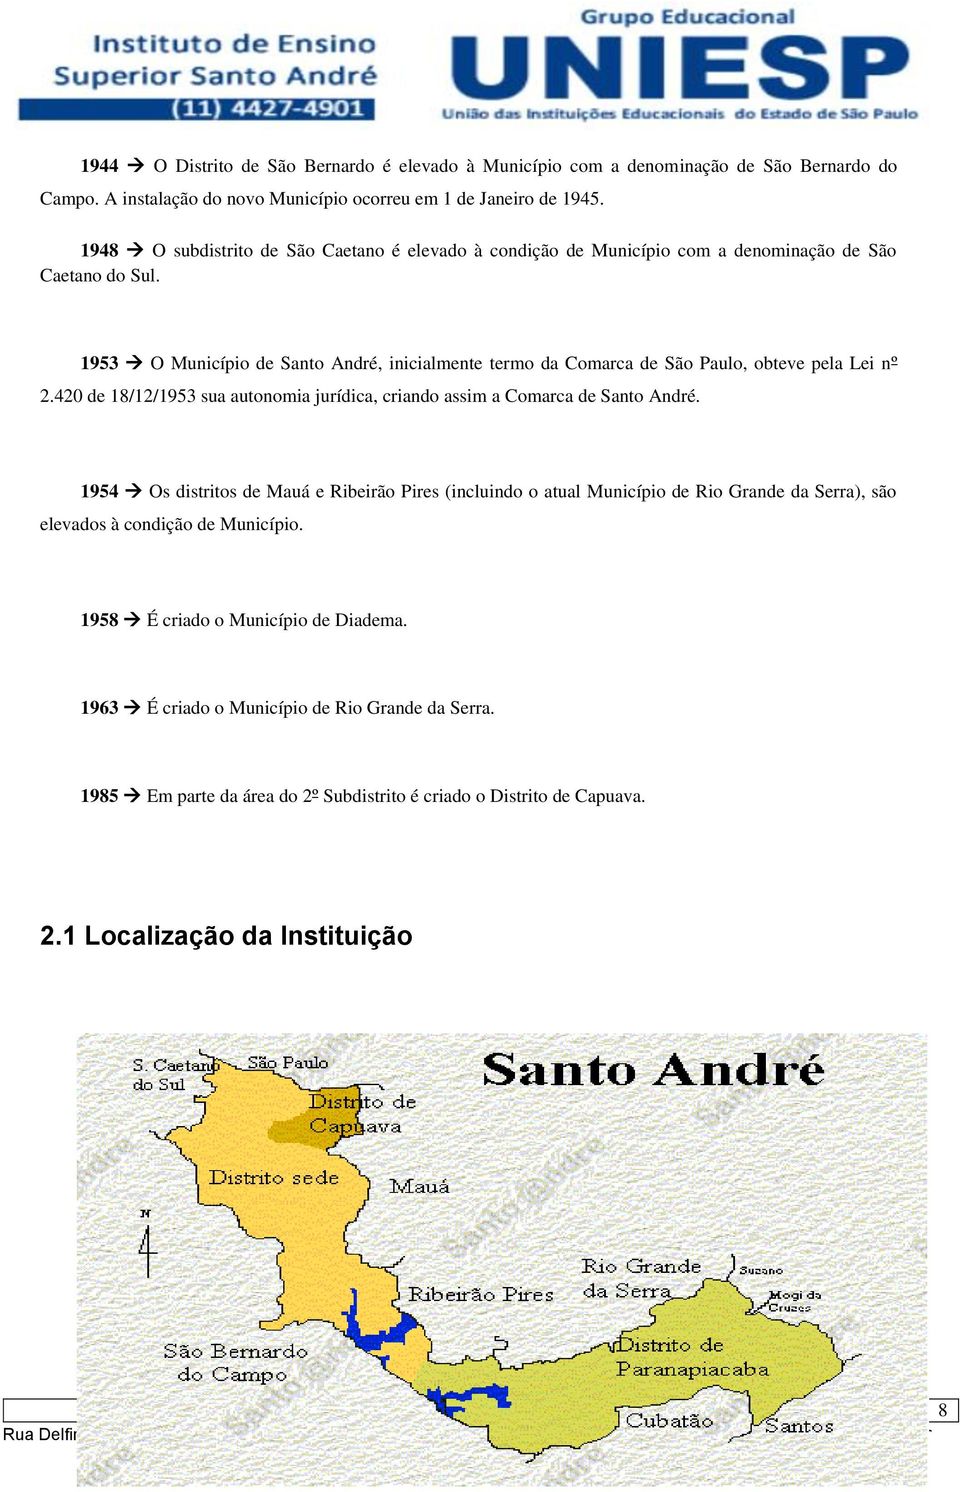 1953 O Município de Santo André, inicialmente termo da Comarca de São Paulo, obteve pela Lei nº 2.420 de 18/12/1953 sua autonomia jurídica, criando assim a Comarca de Santo André.